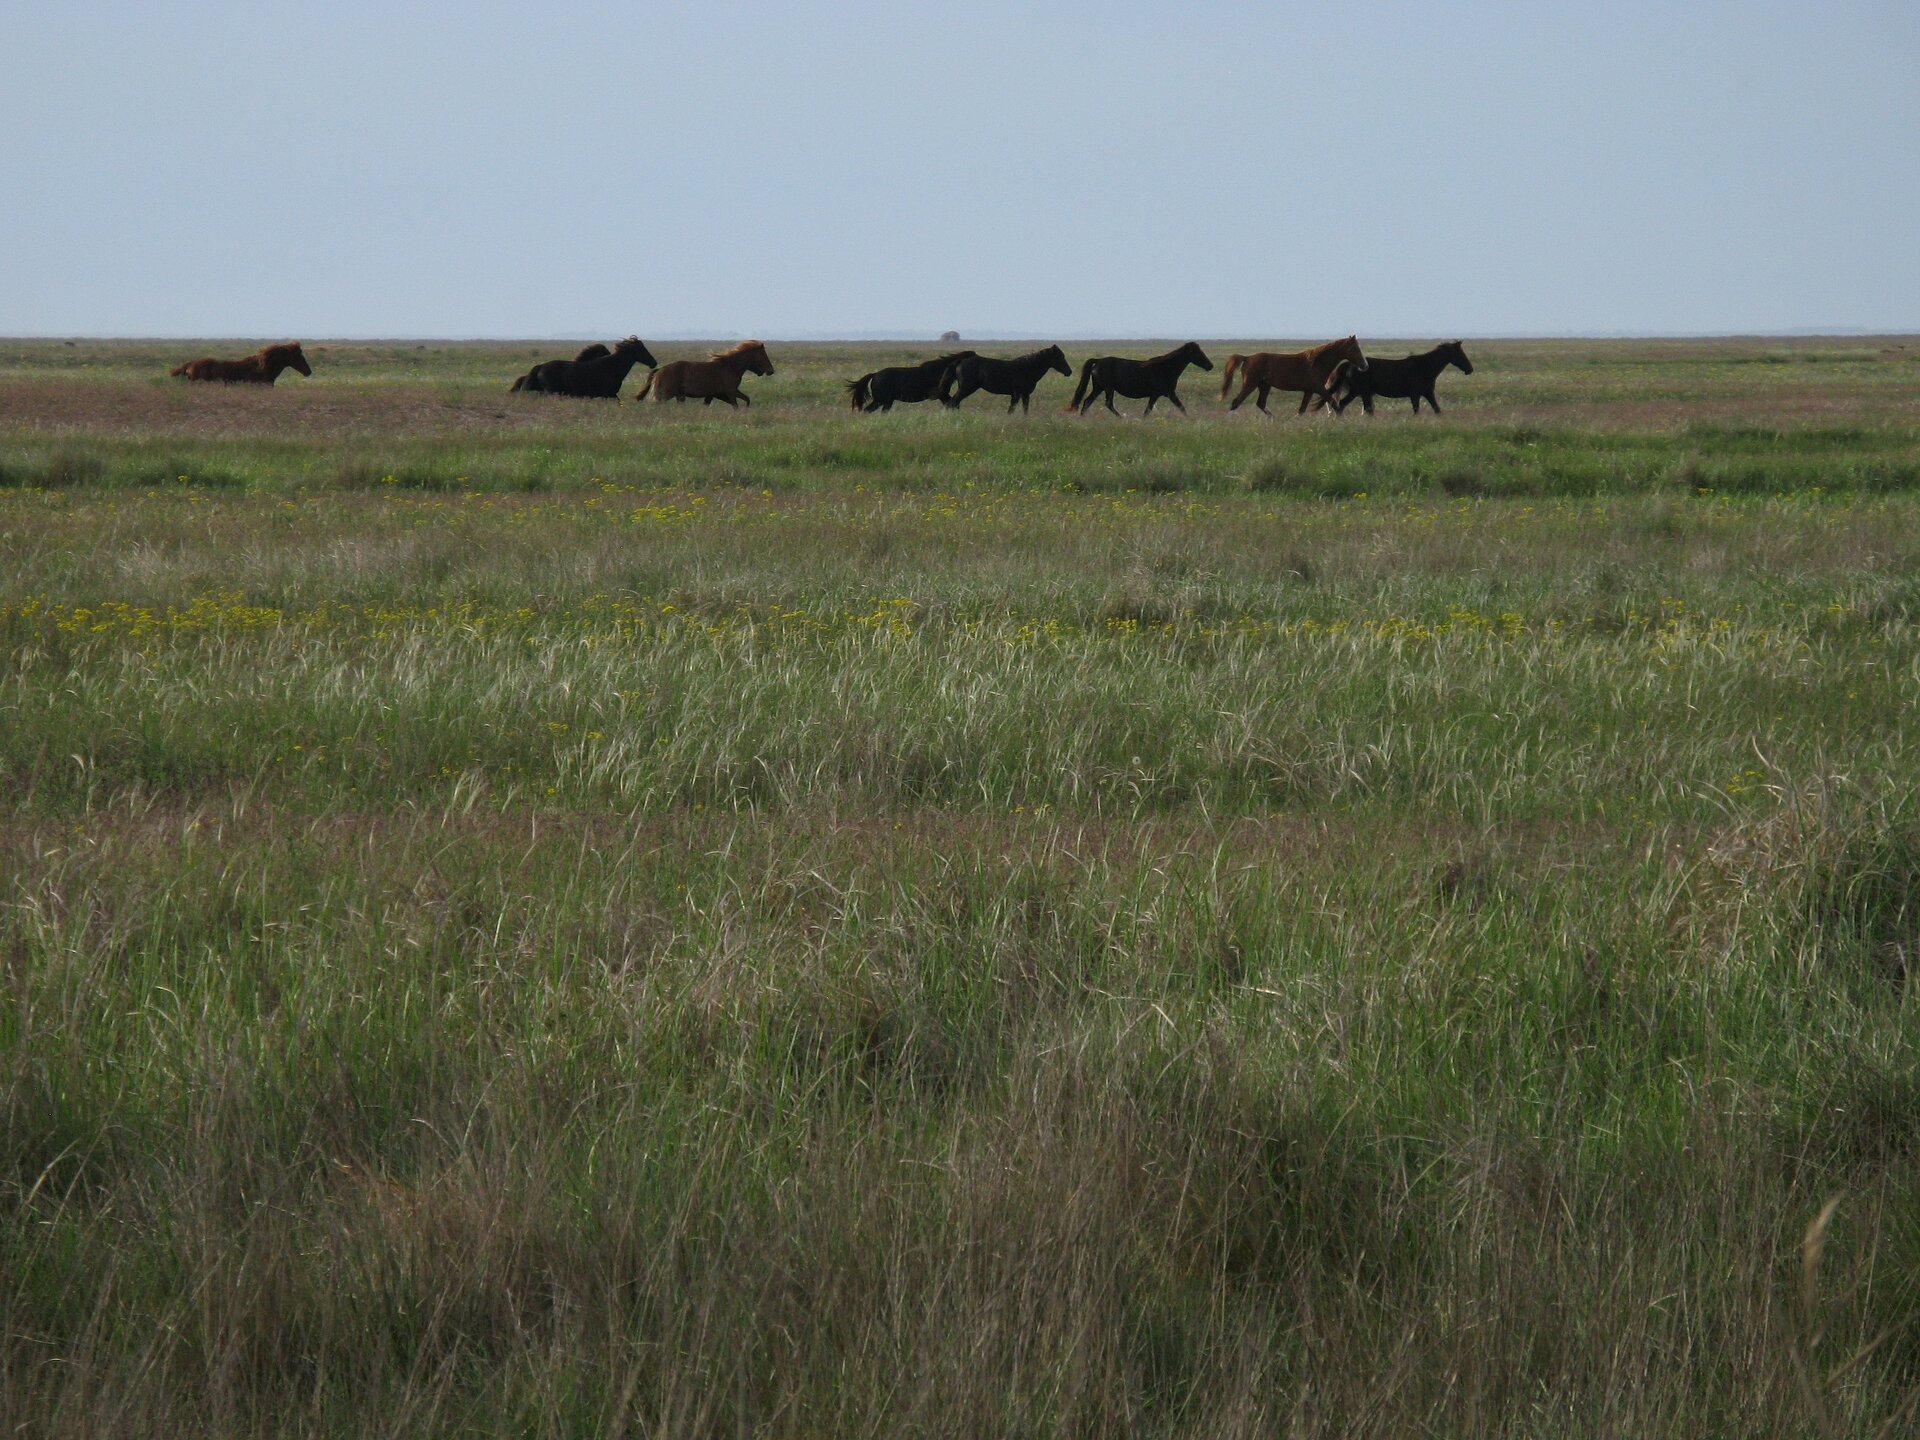 Zdjęcie przedstawia płaski teren porośnięty wyższą trawą. Po terenie biegnie stado dzikich koni. 